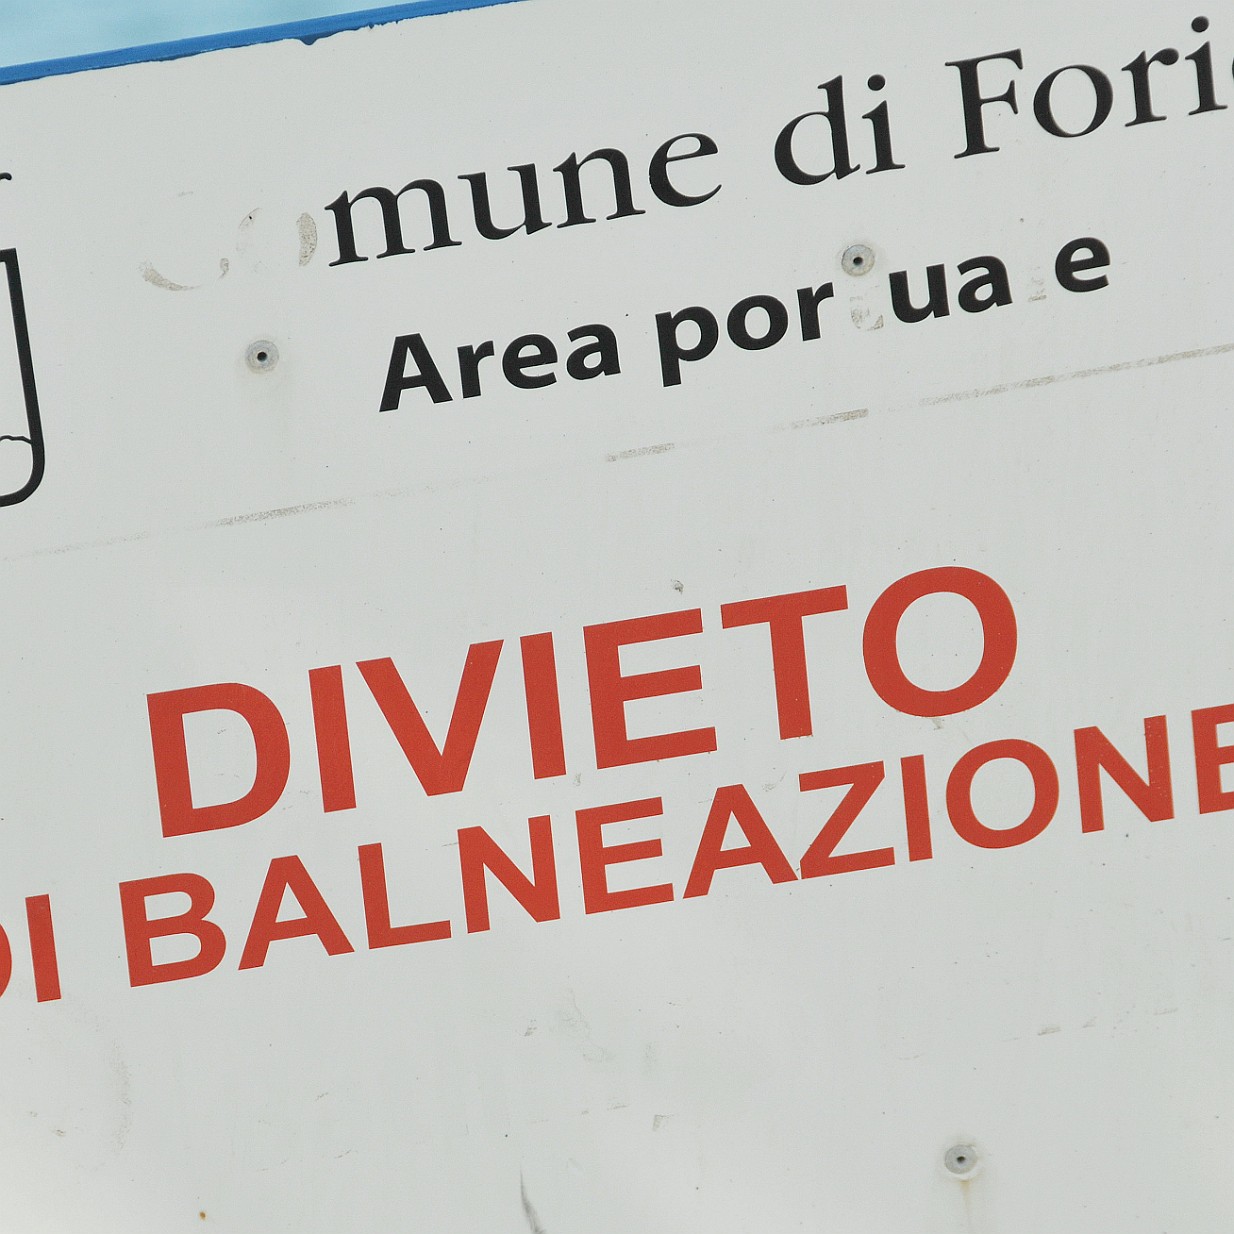 2014-10 Ischia [427] Ischia, Italien - Schilder, Signs, Typo